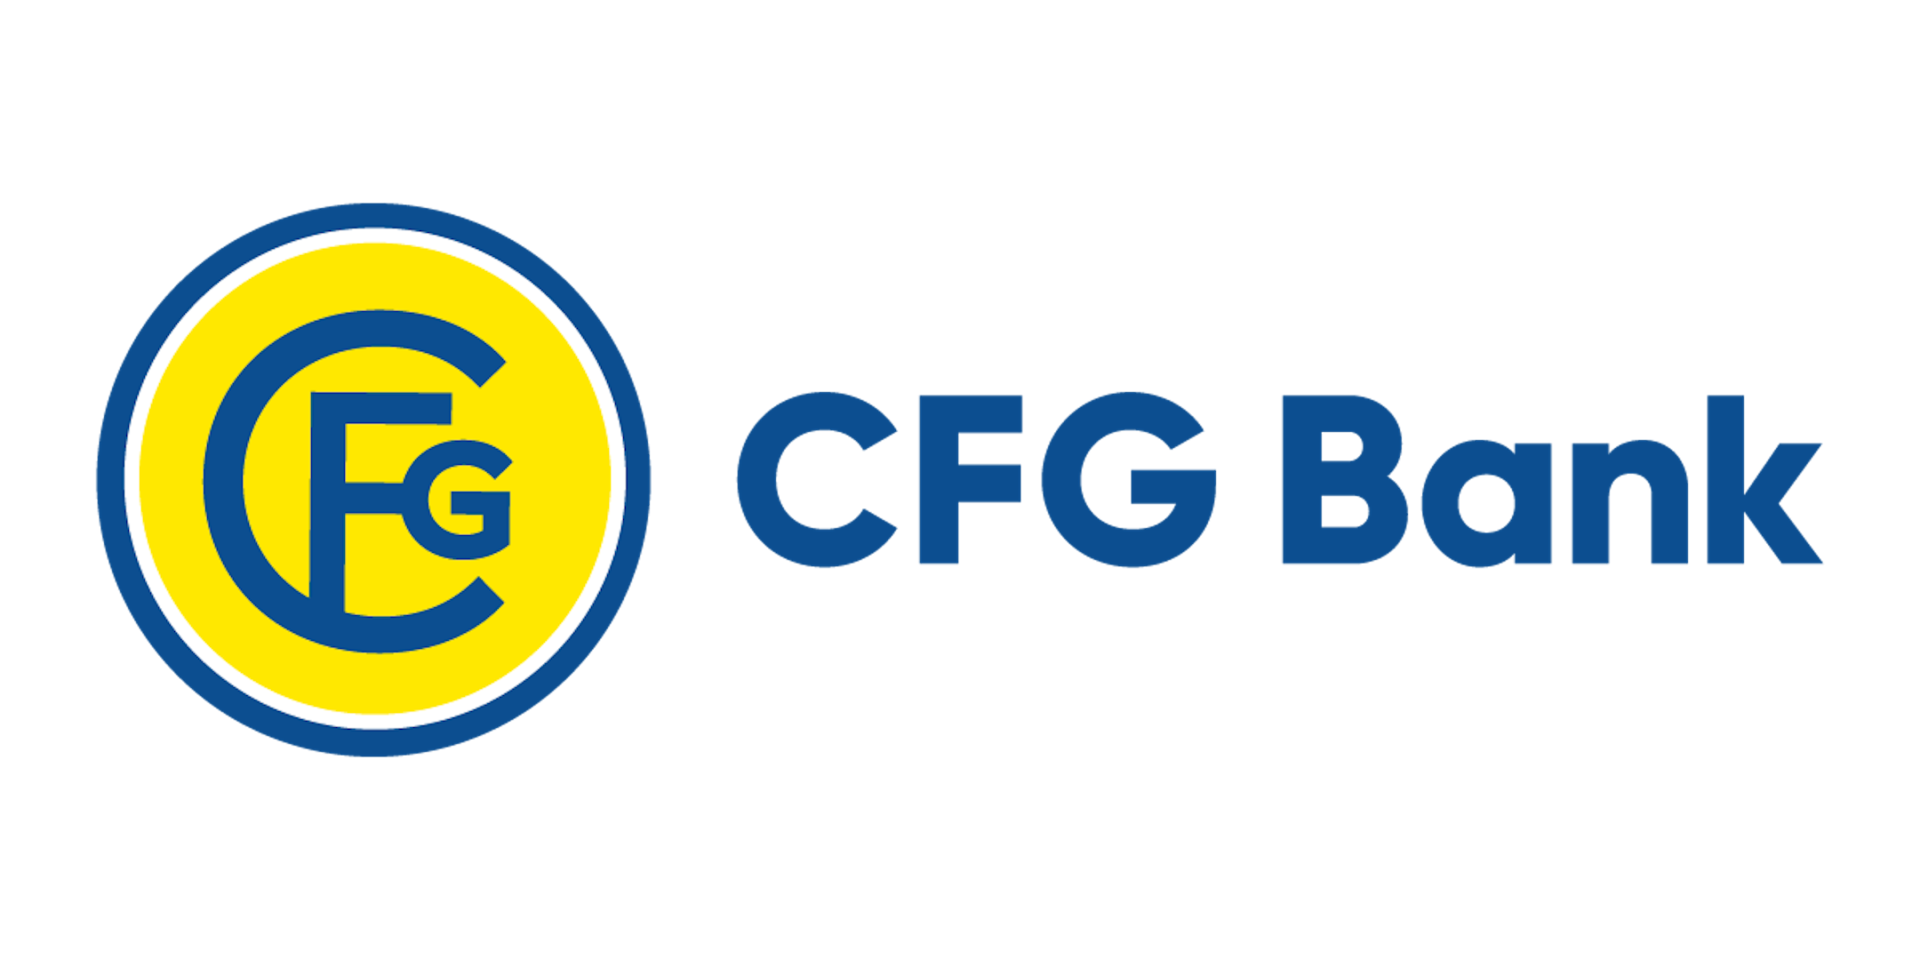 CFG Bank Logo